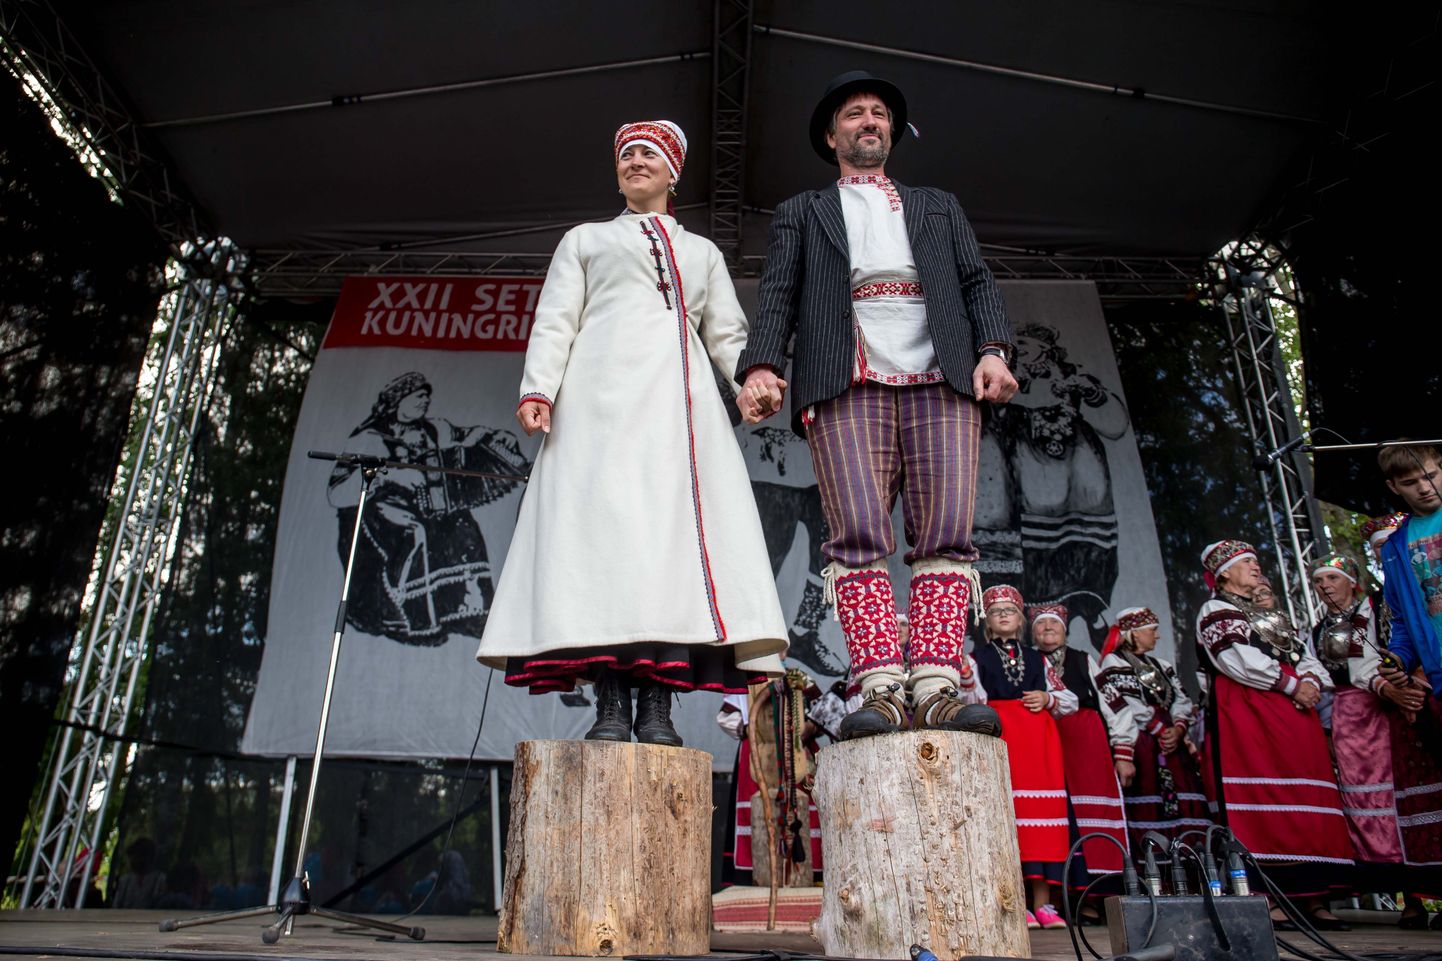 2015. aasta Seto kuningriigi päev, kus määrati kuningriigi uueks valitsejaks, ülemsootskaks Jane Vabarna (vasakul). Teine kandidaat oli Aivar Piirisild. Praegu on ülemsootska  Aarne Leima.